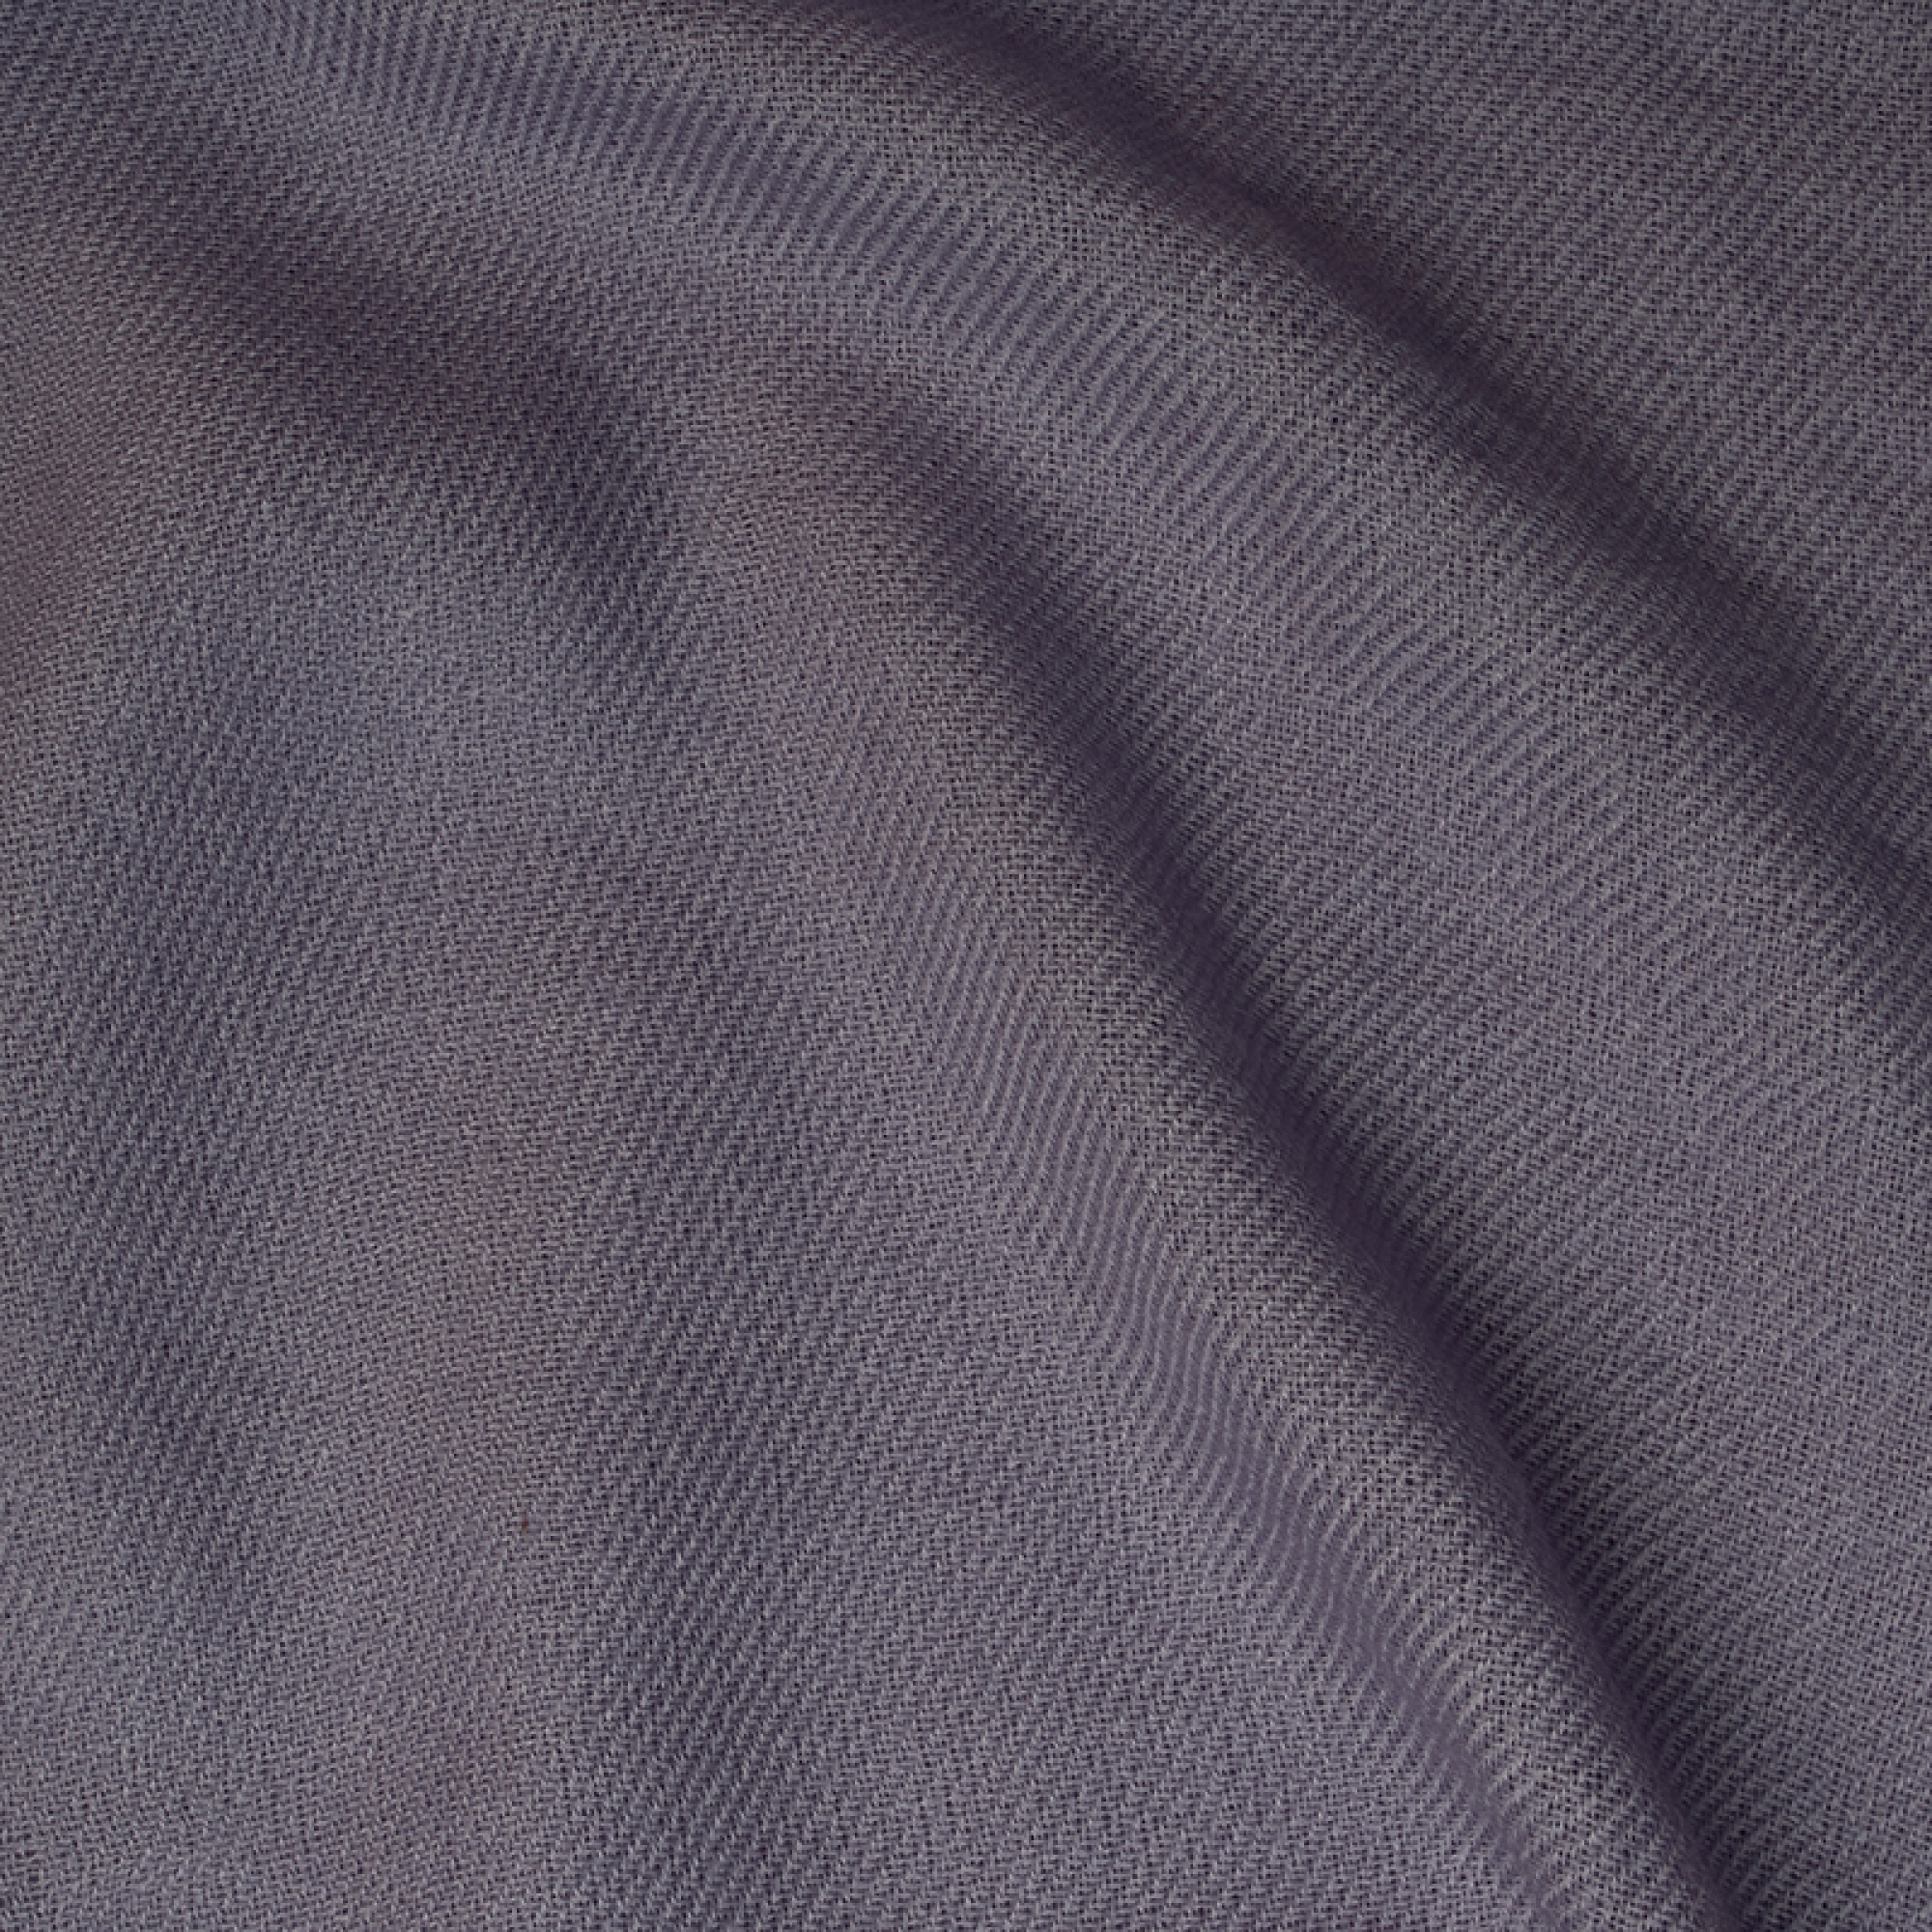 Cachemire pull femme toodoo plain l 220 x 220 parme gris 220x220cm